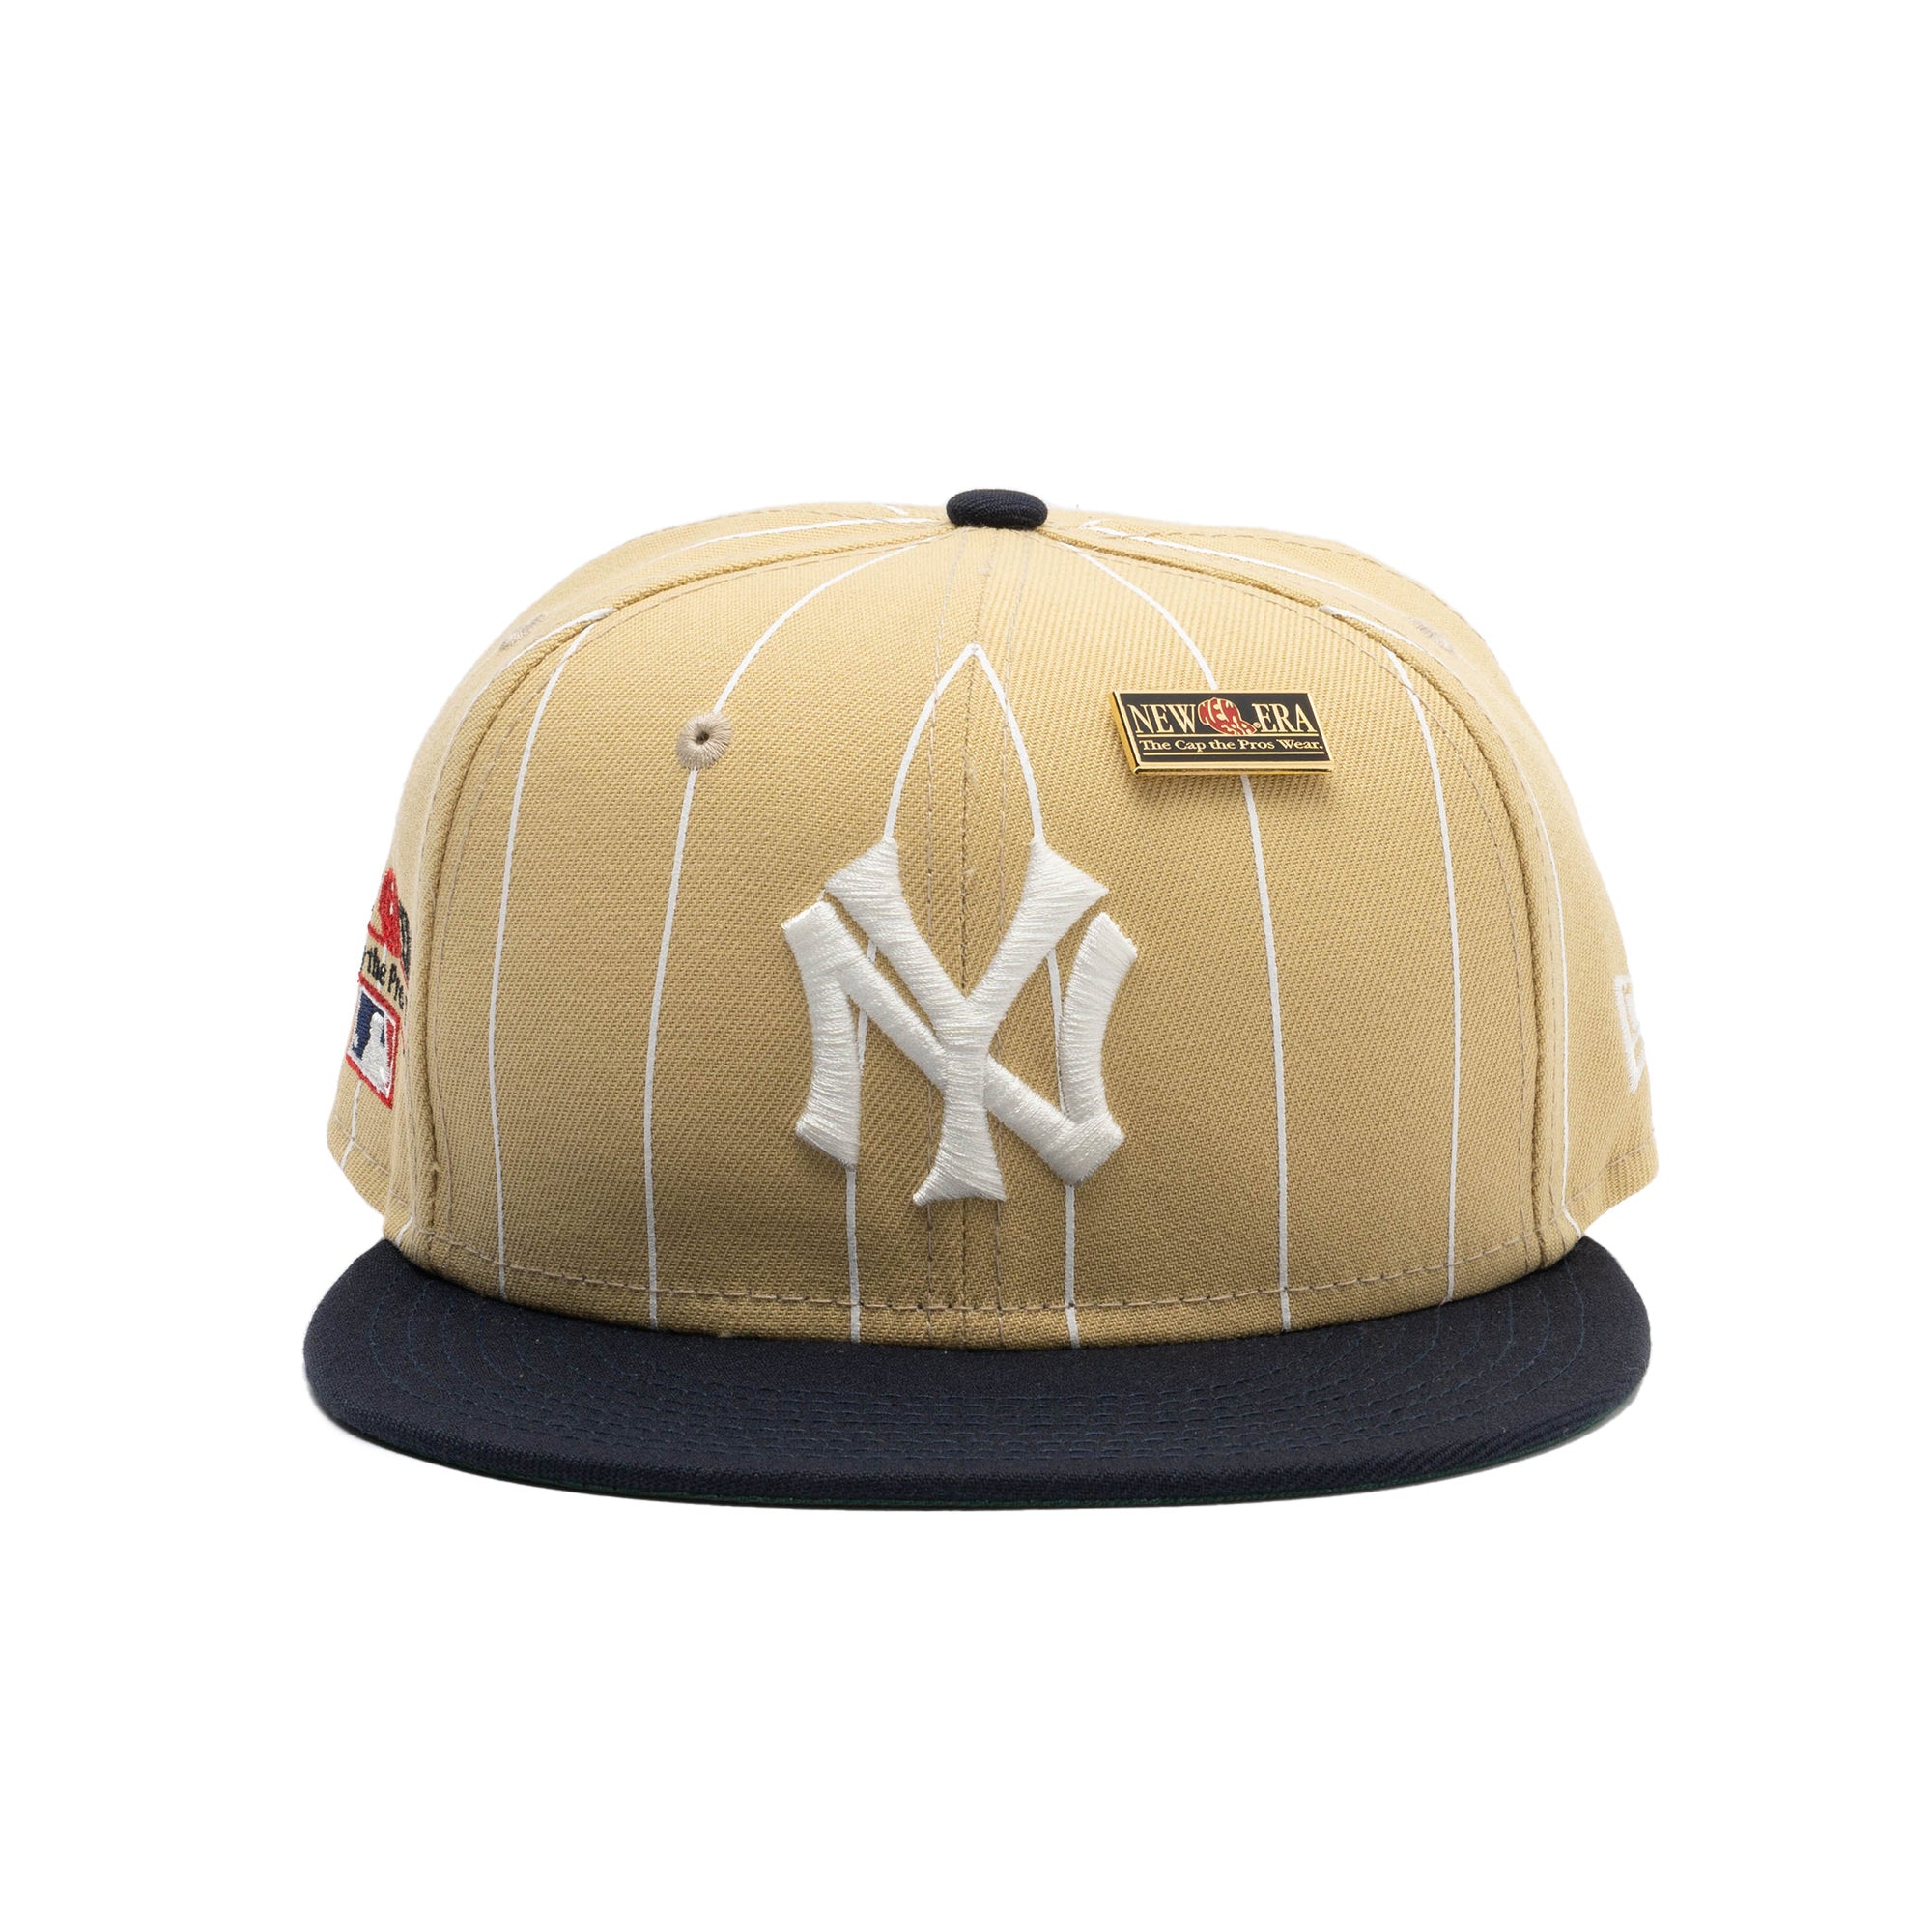 NY Yankees New York Dog Baseball Tan / Cap - Tan